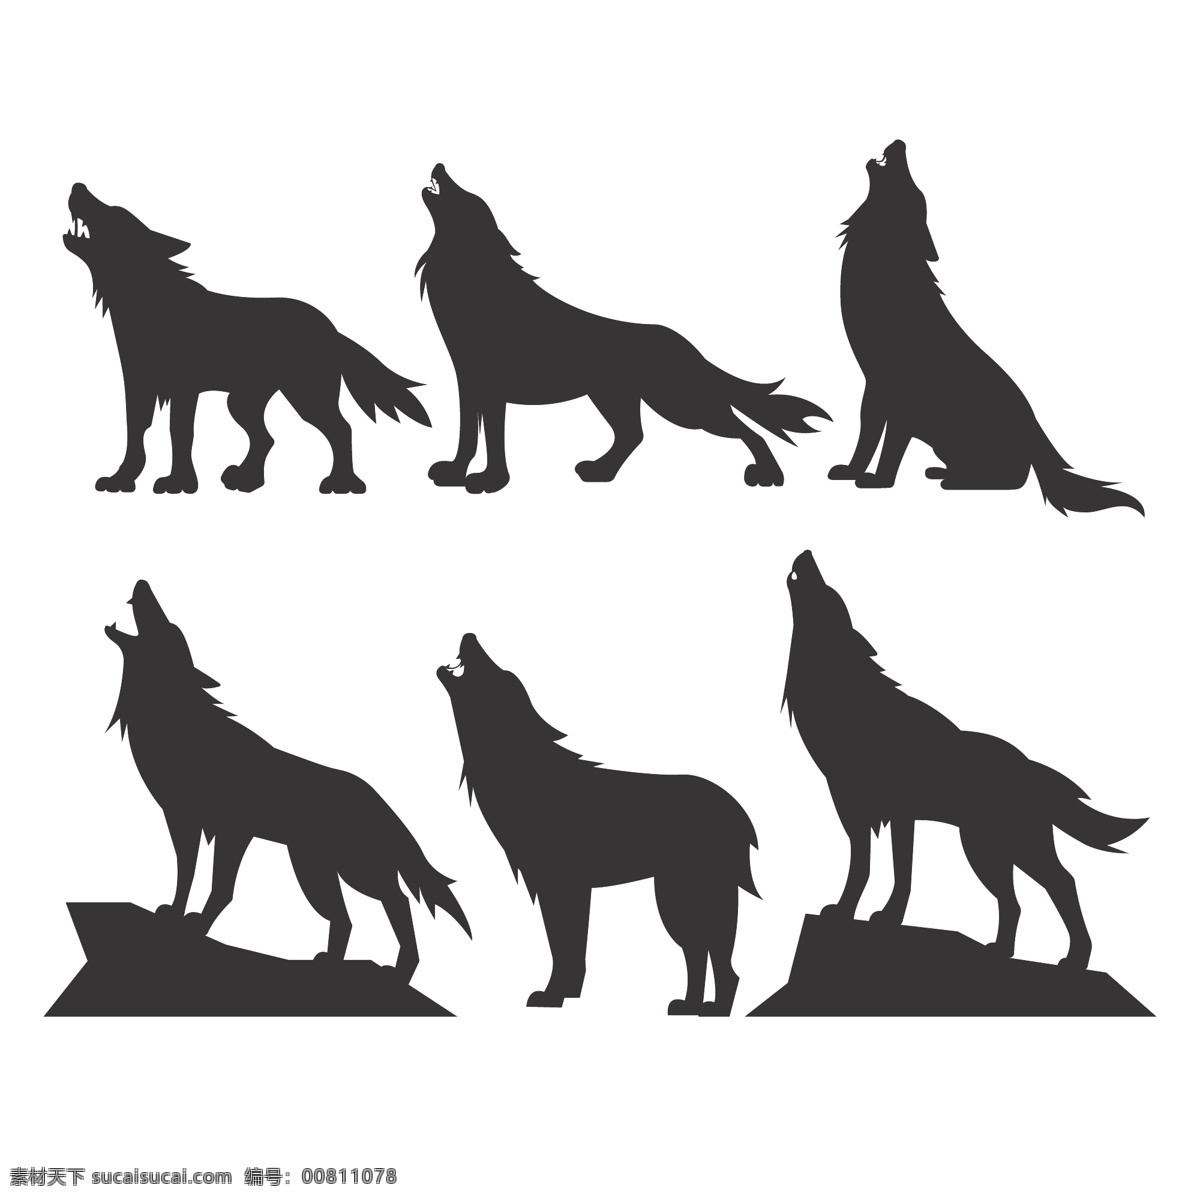 嚎叫的狼剪影 嚎叫的狼矢量 嚎叫的狼素材 嚎叫的狼 狼剪影 狼素材 狼 共享设计矢量 生物世界 野生动物